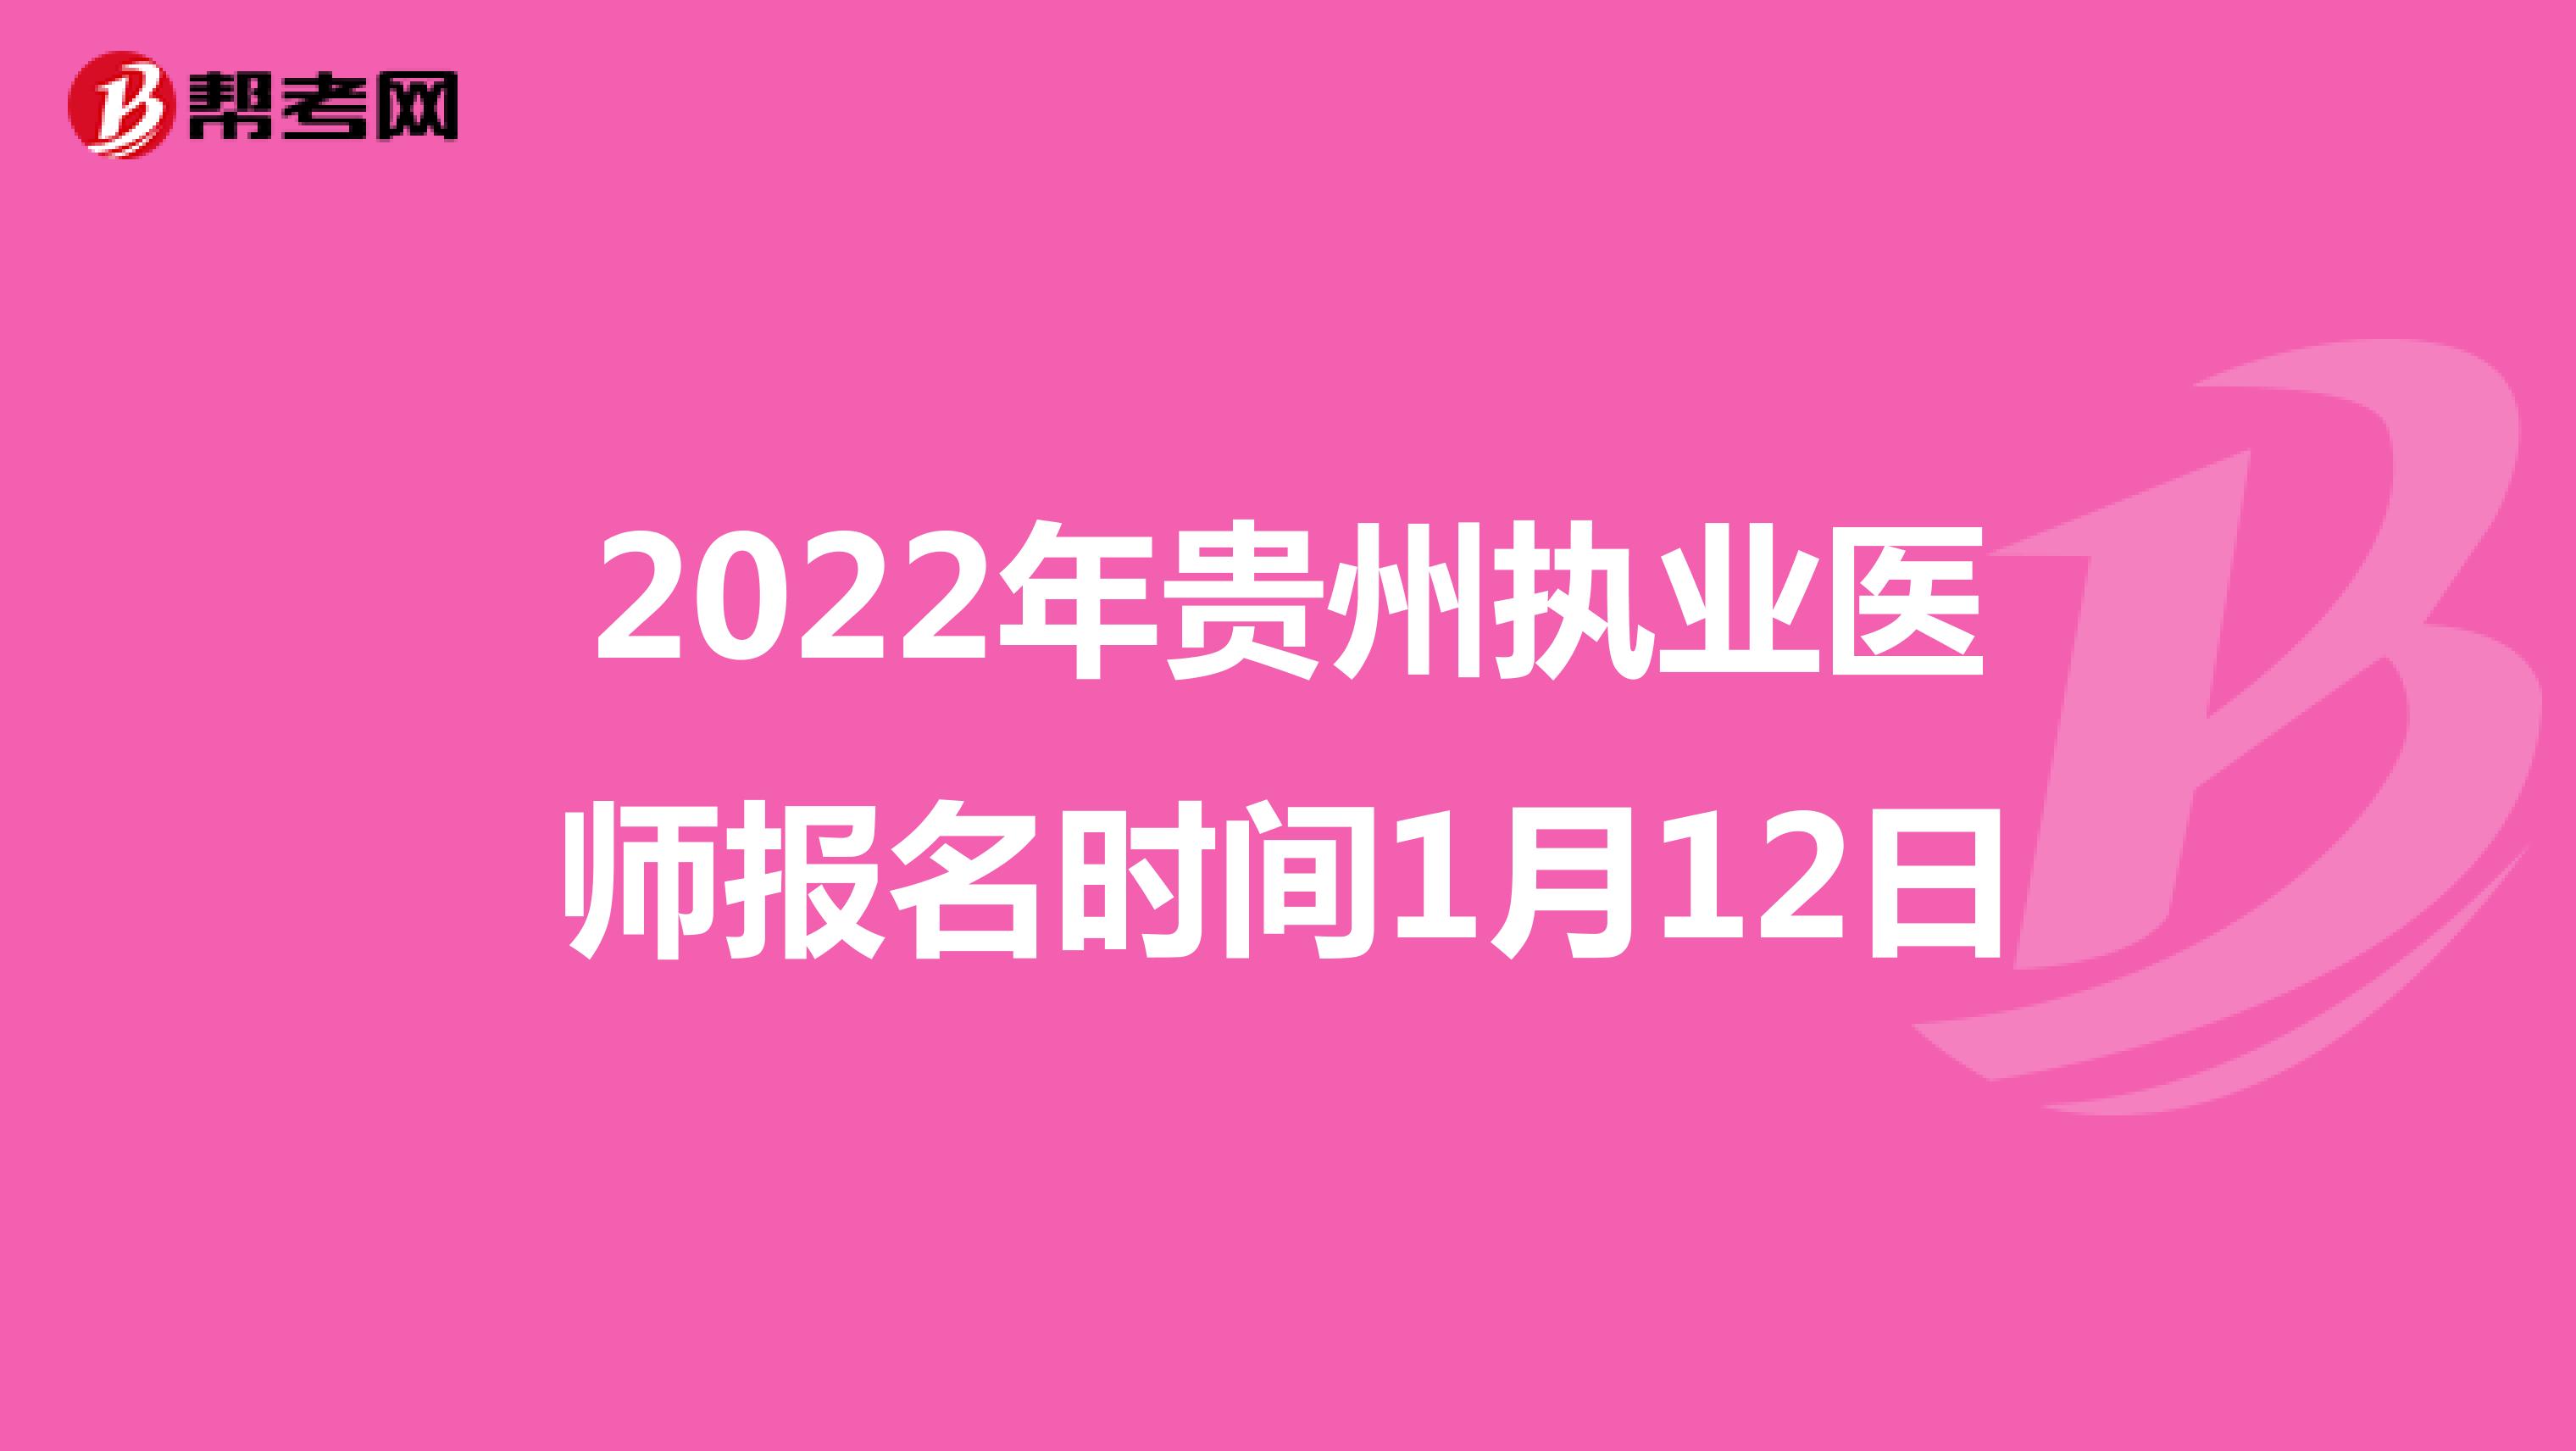 2022年贵州执业医师报名时间1月12日